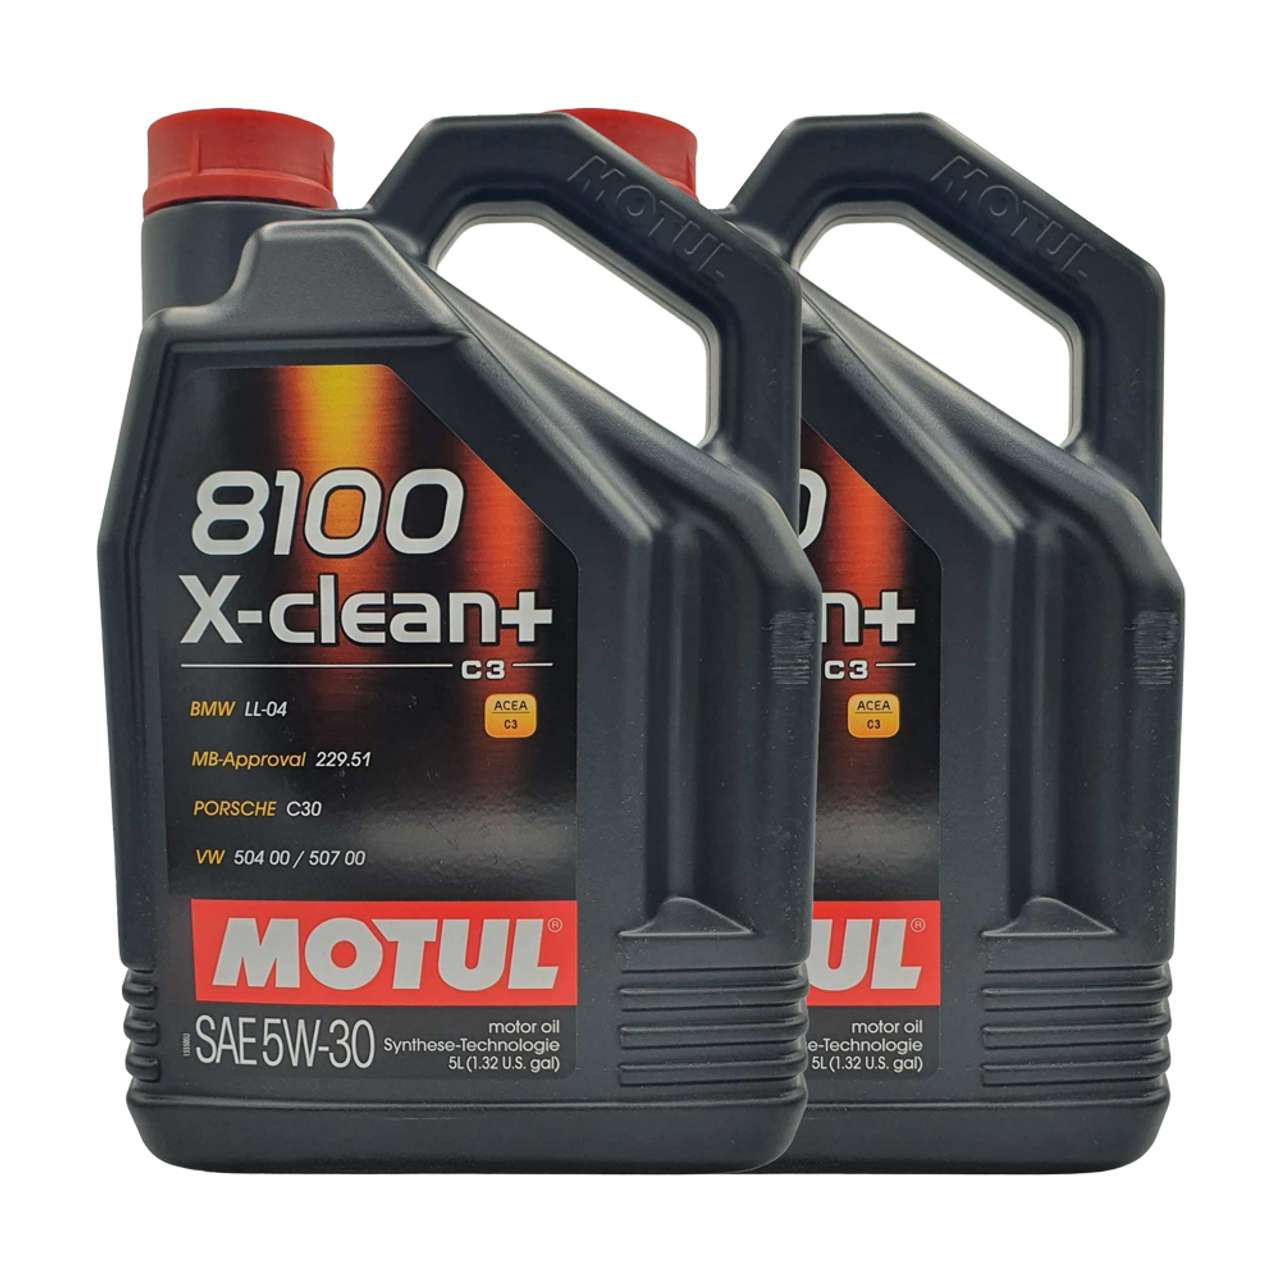 Motul 8100 X-clean+ 5W-30 2x5 Liter